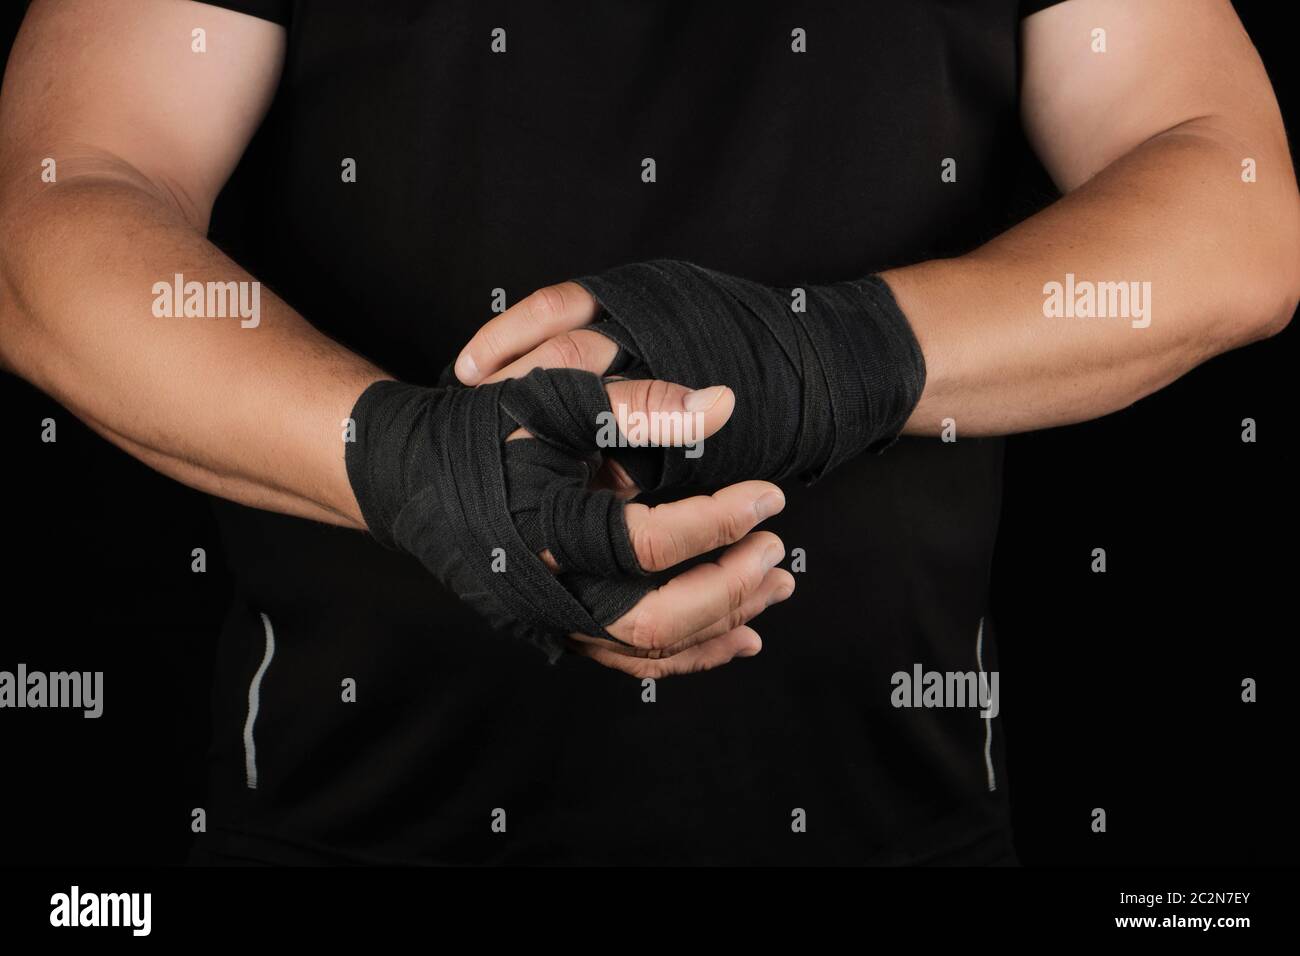 les athlètes adultes se tiennent dans des vêtements noirs et enveloppent ses mains dans un bandage élastique en textile noir avant l'entraînement, le fond noir, le corps musculaire Banque D'Images